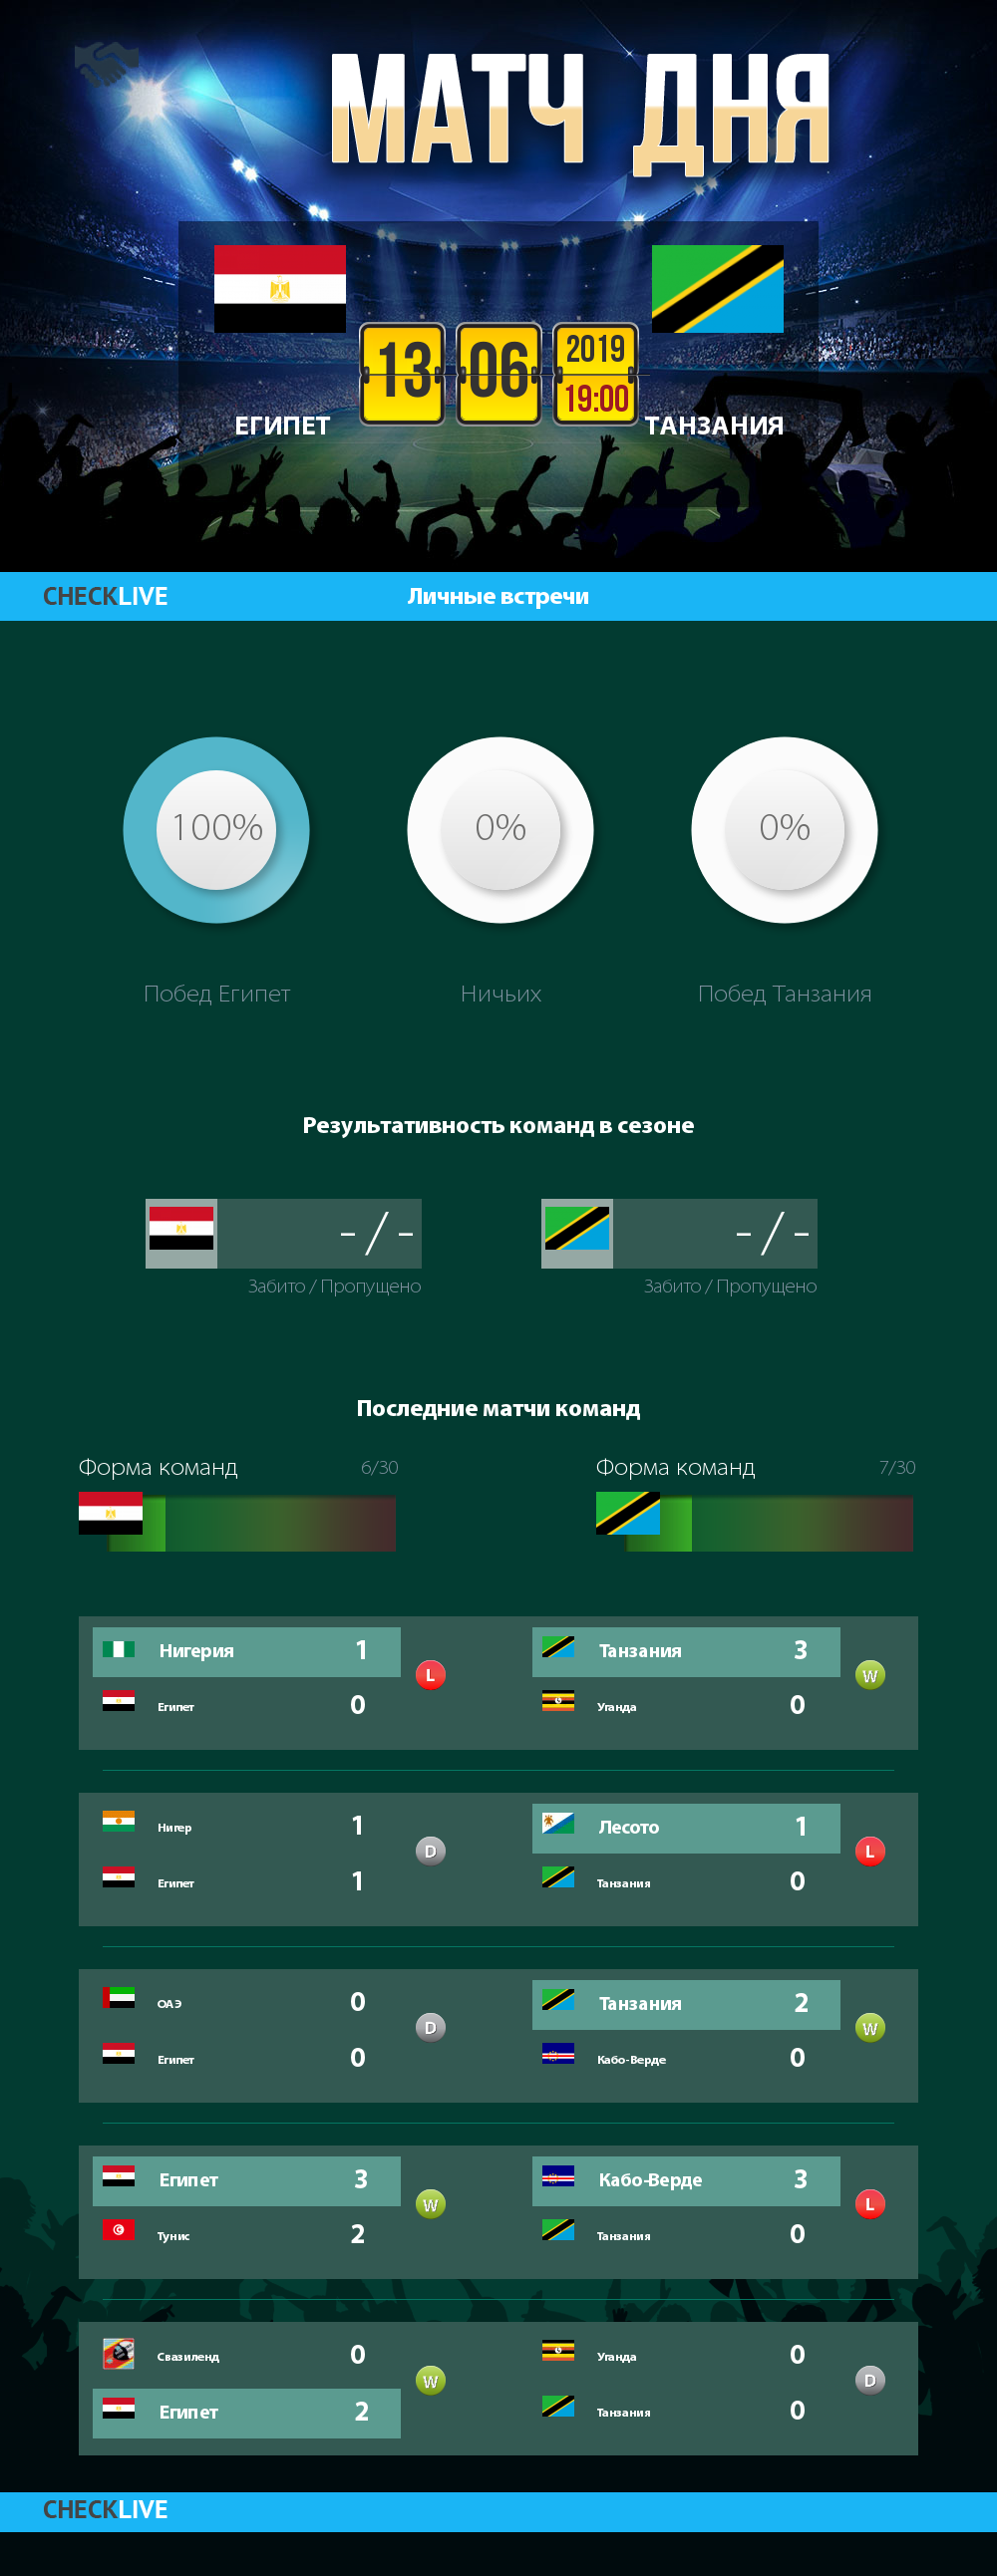 Инфографика Египет и Танзания матч дня 13.06.2019